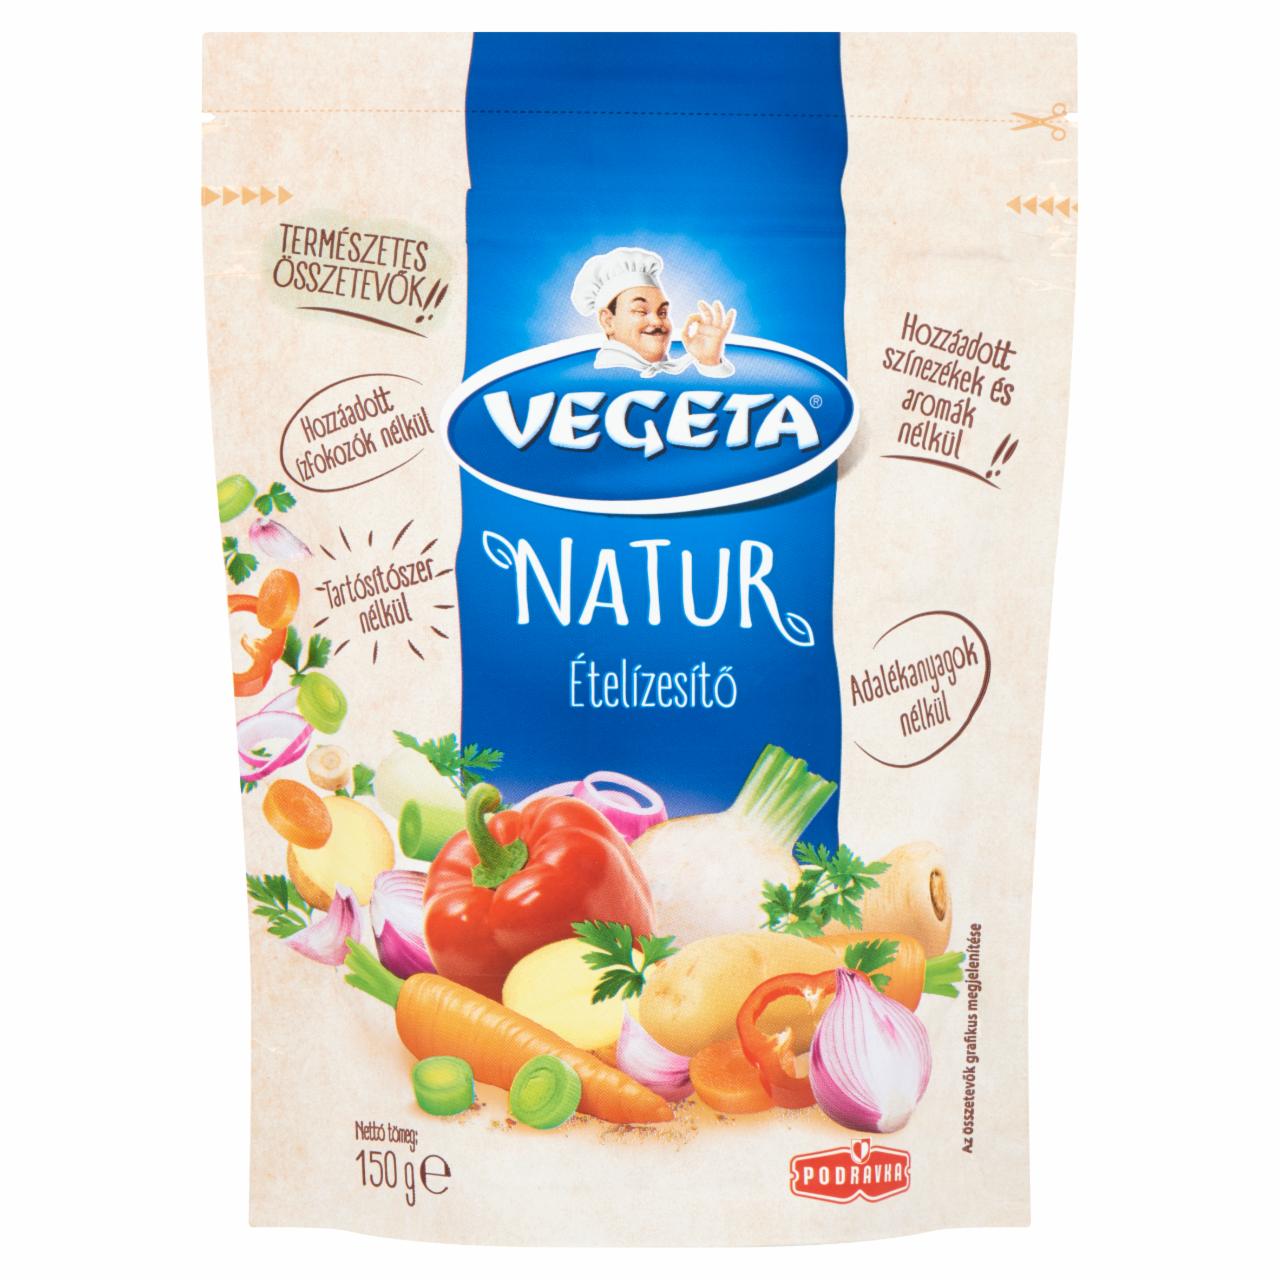 Képek - Vegeta Natur ételízesítő 150 g